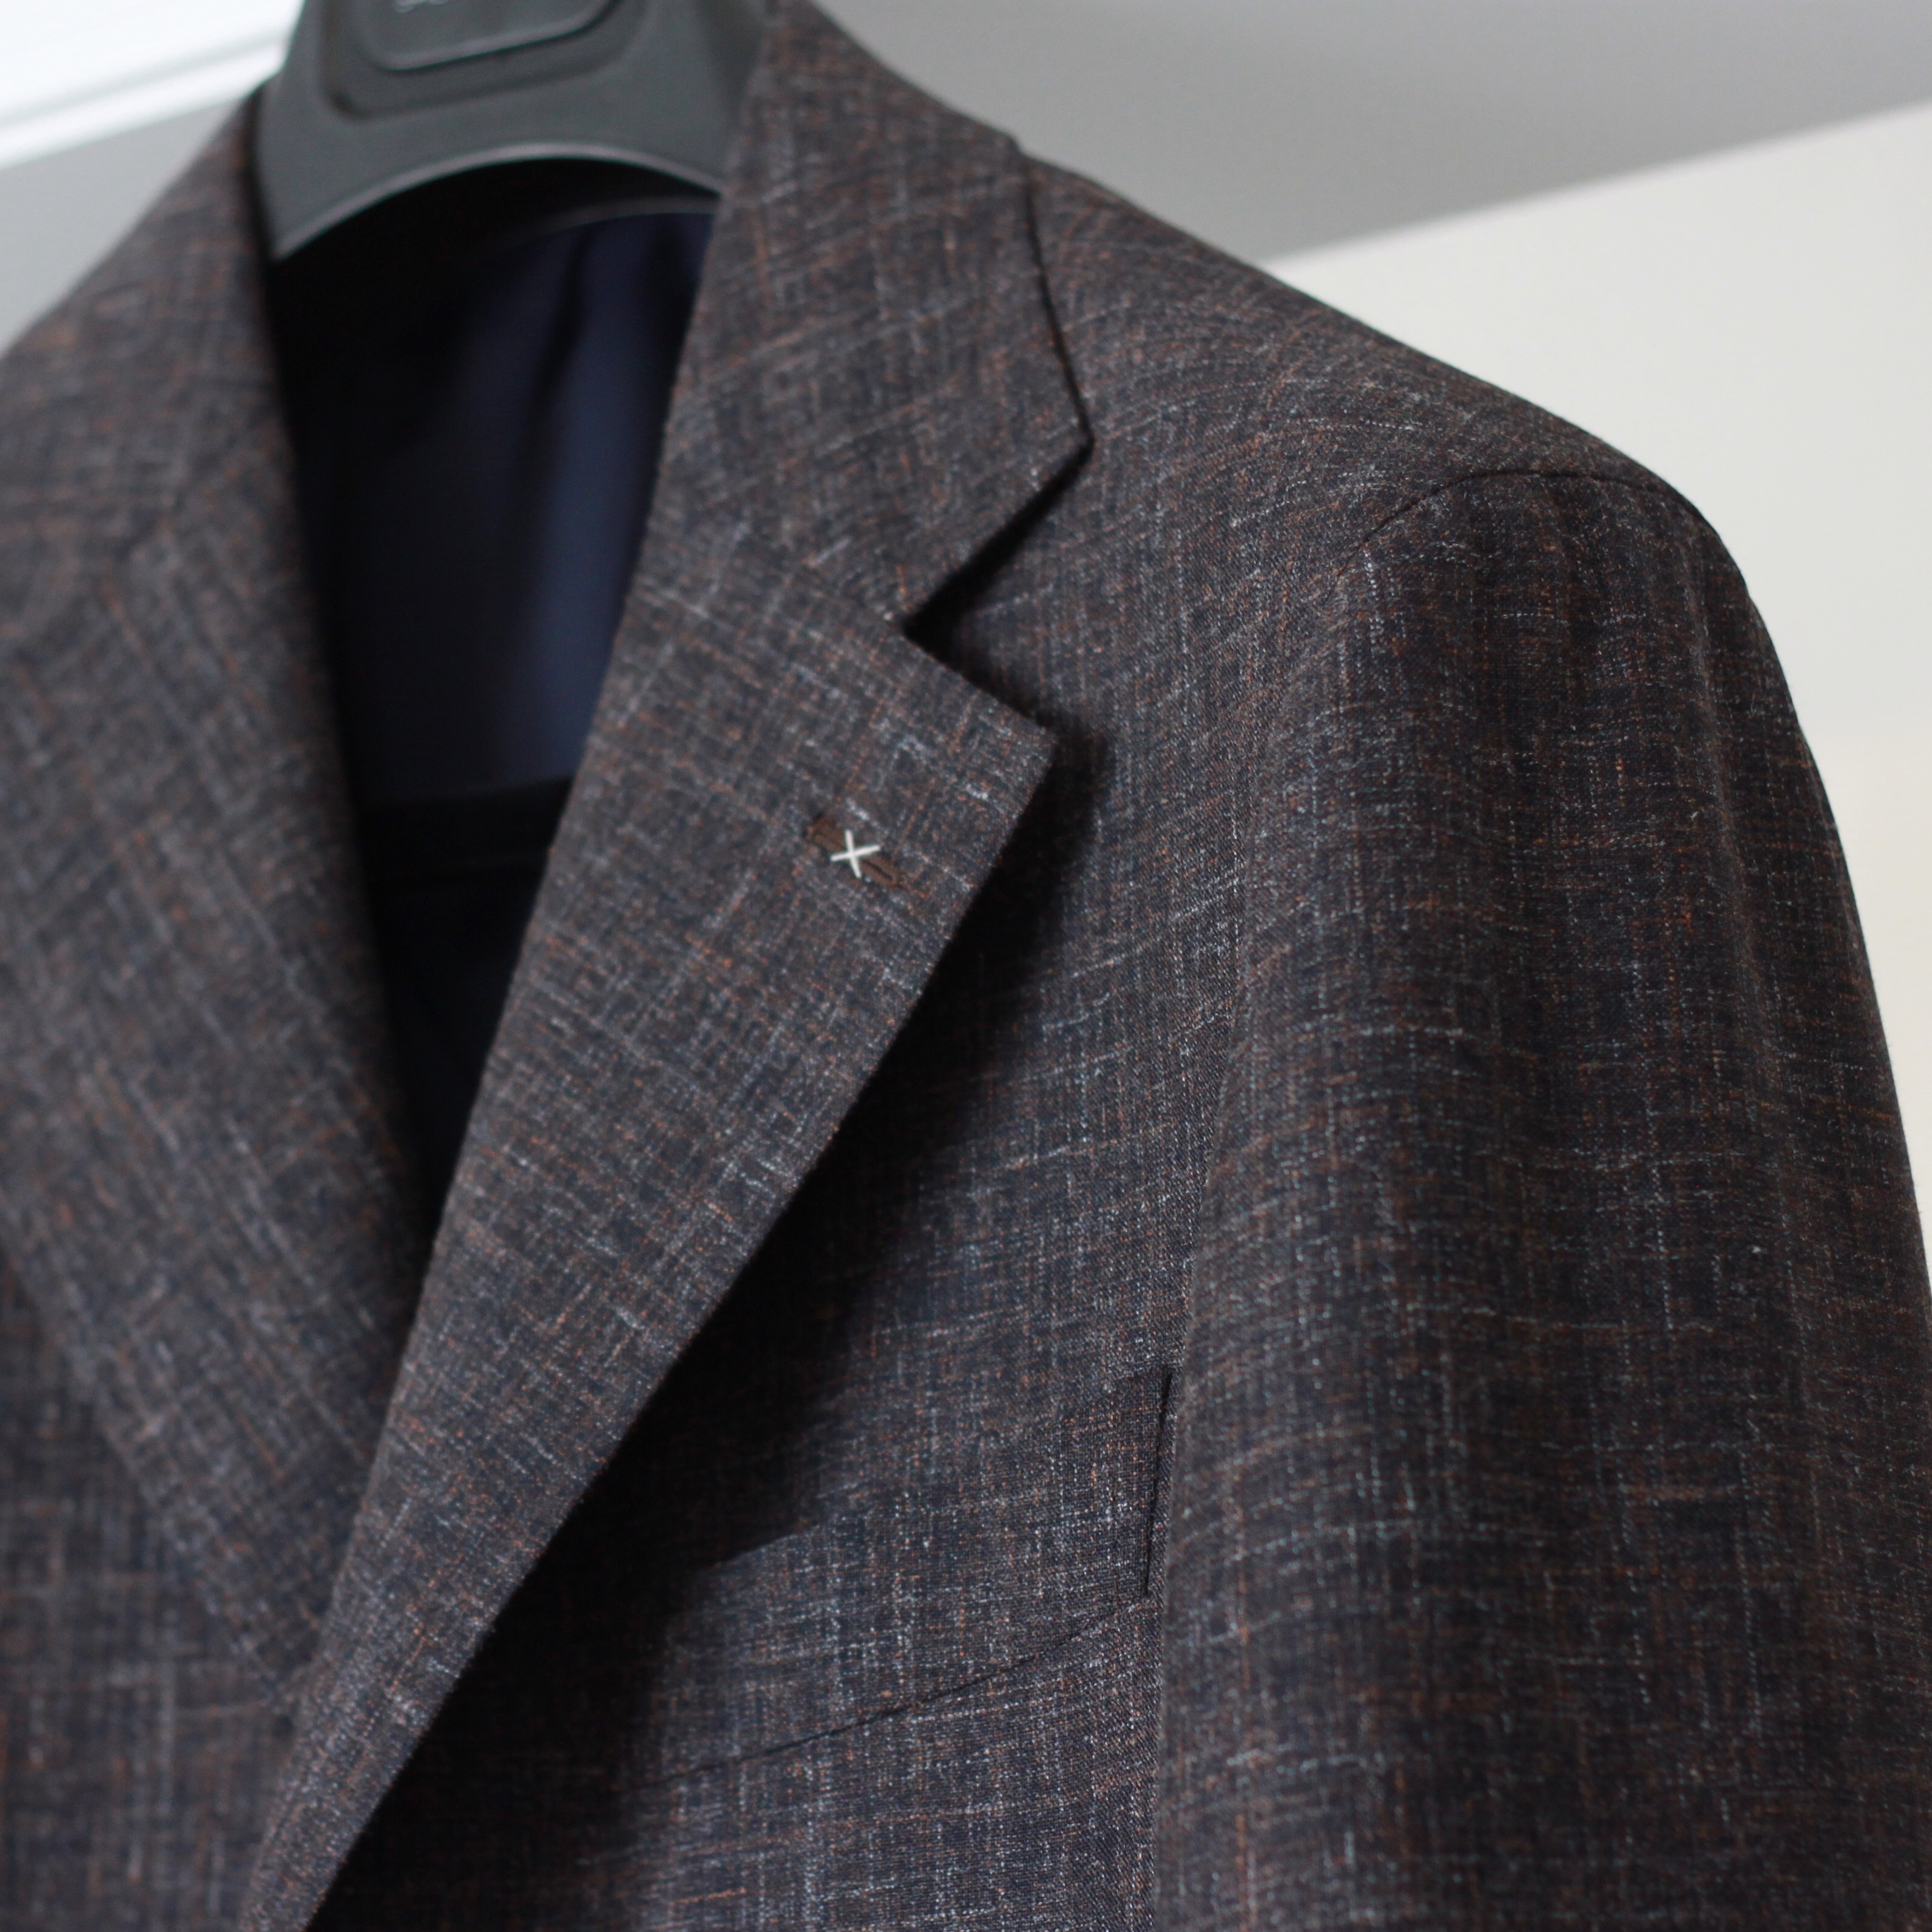 spier & mackay neapolitan, sport coat, vitale barberis canonico, brown, odd jacket